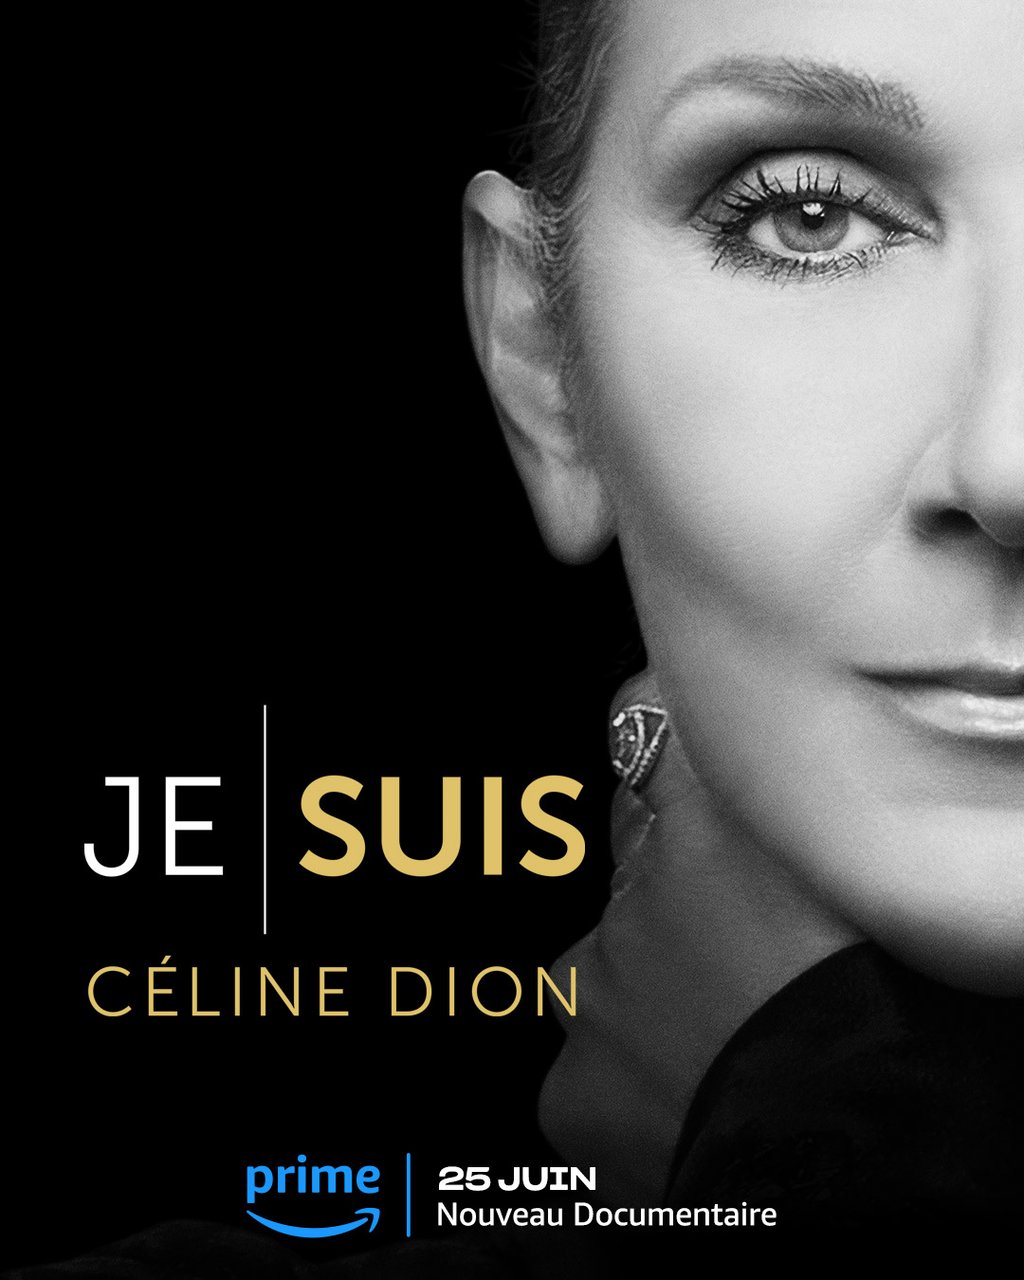 Une folle rumeur concernant le grand retour sur scène de Céline Dion enflamme ses fans